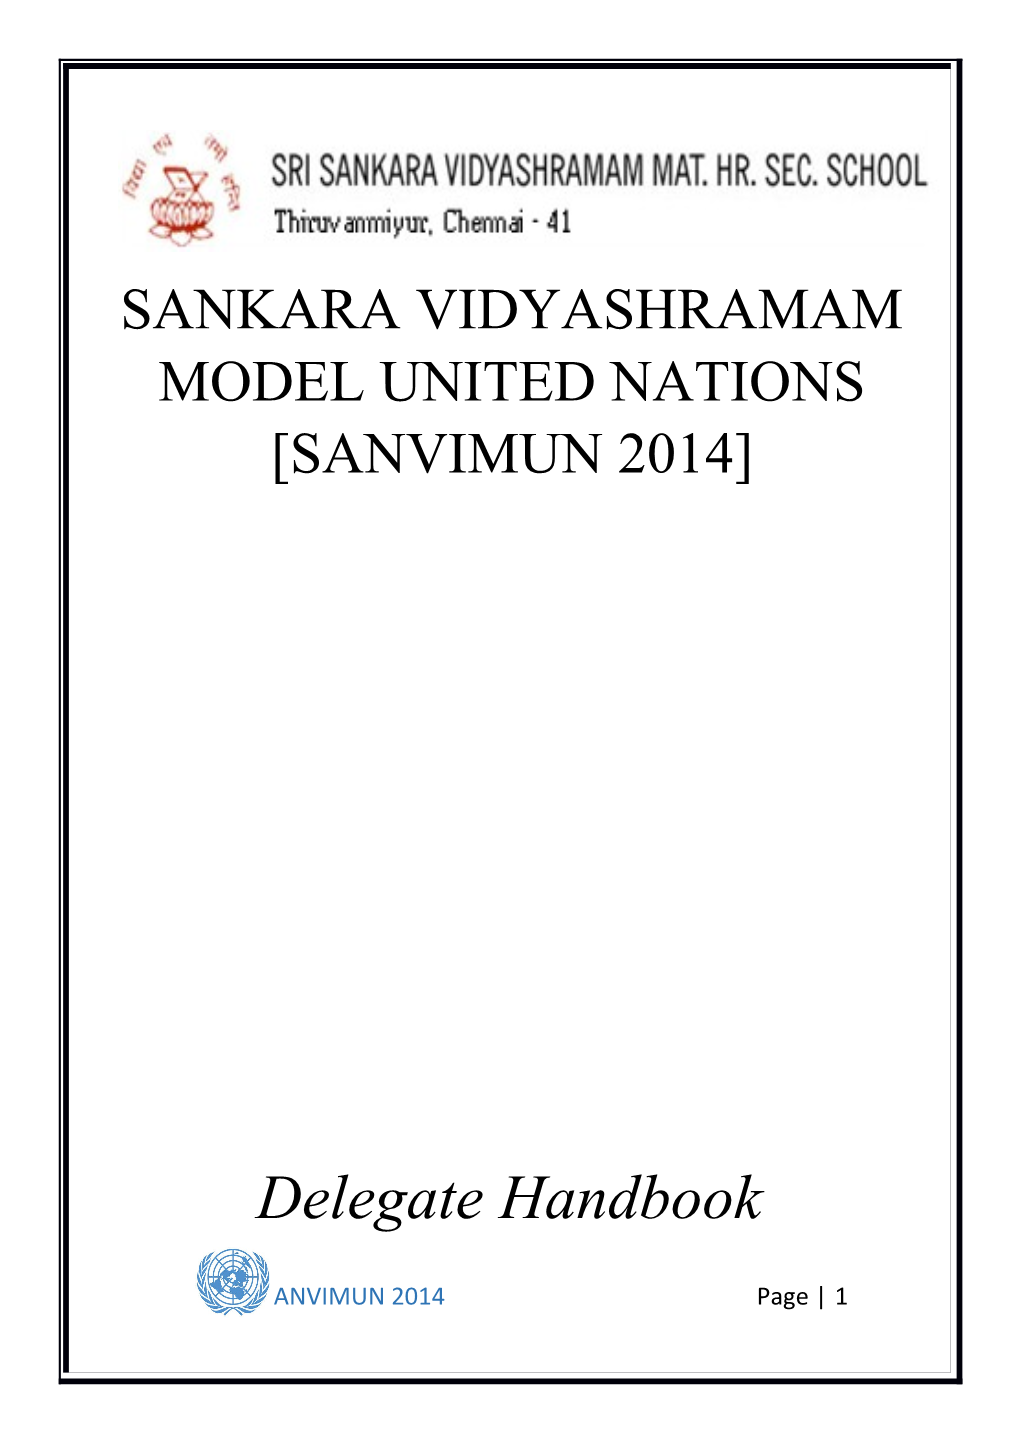 Sankara Vidyashramam Model United Nations